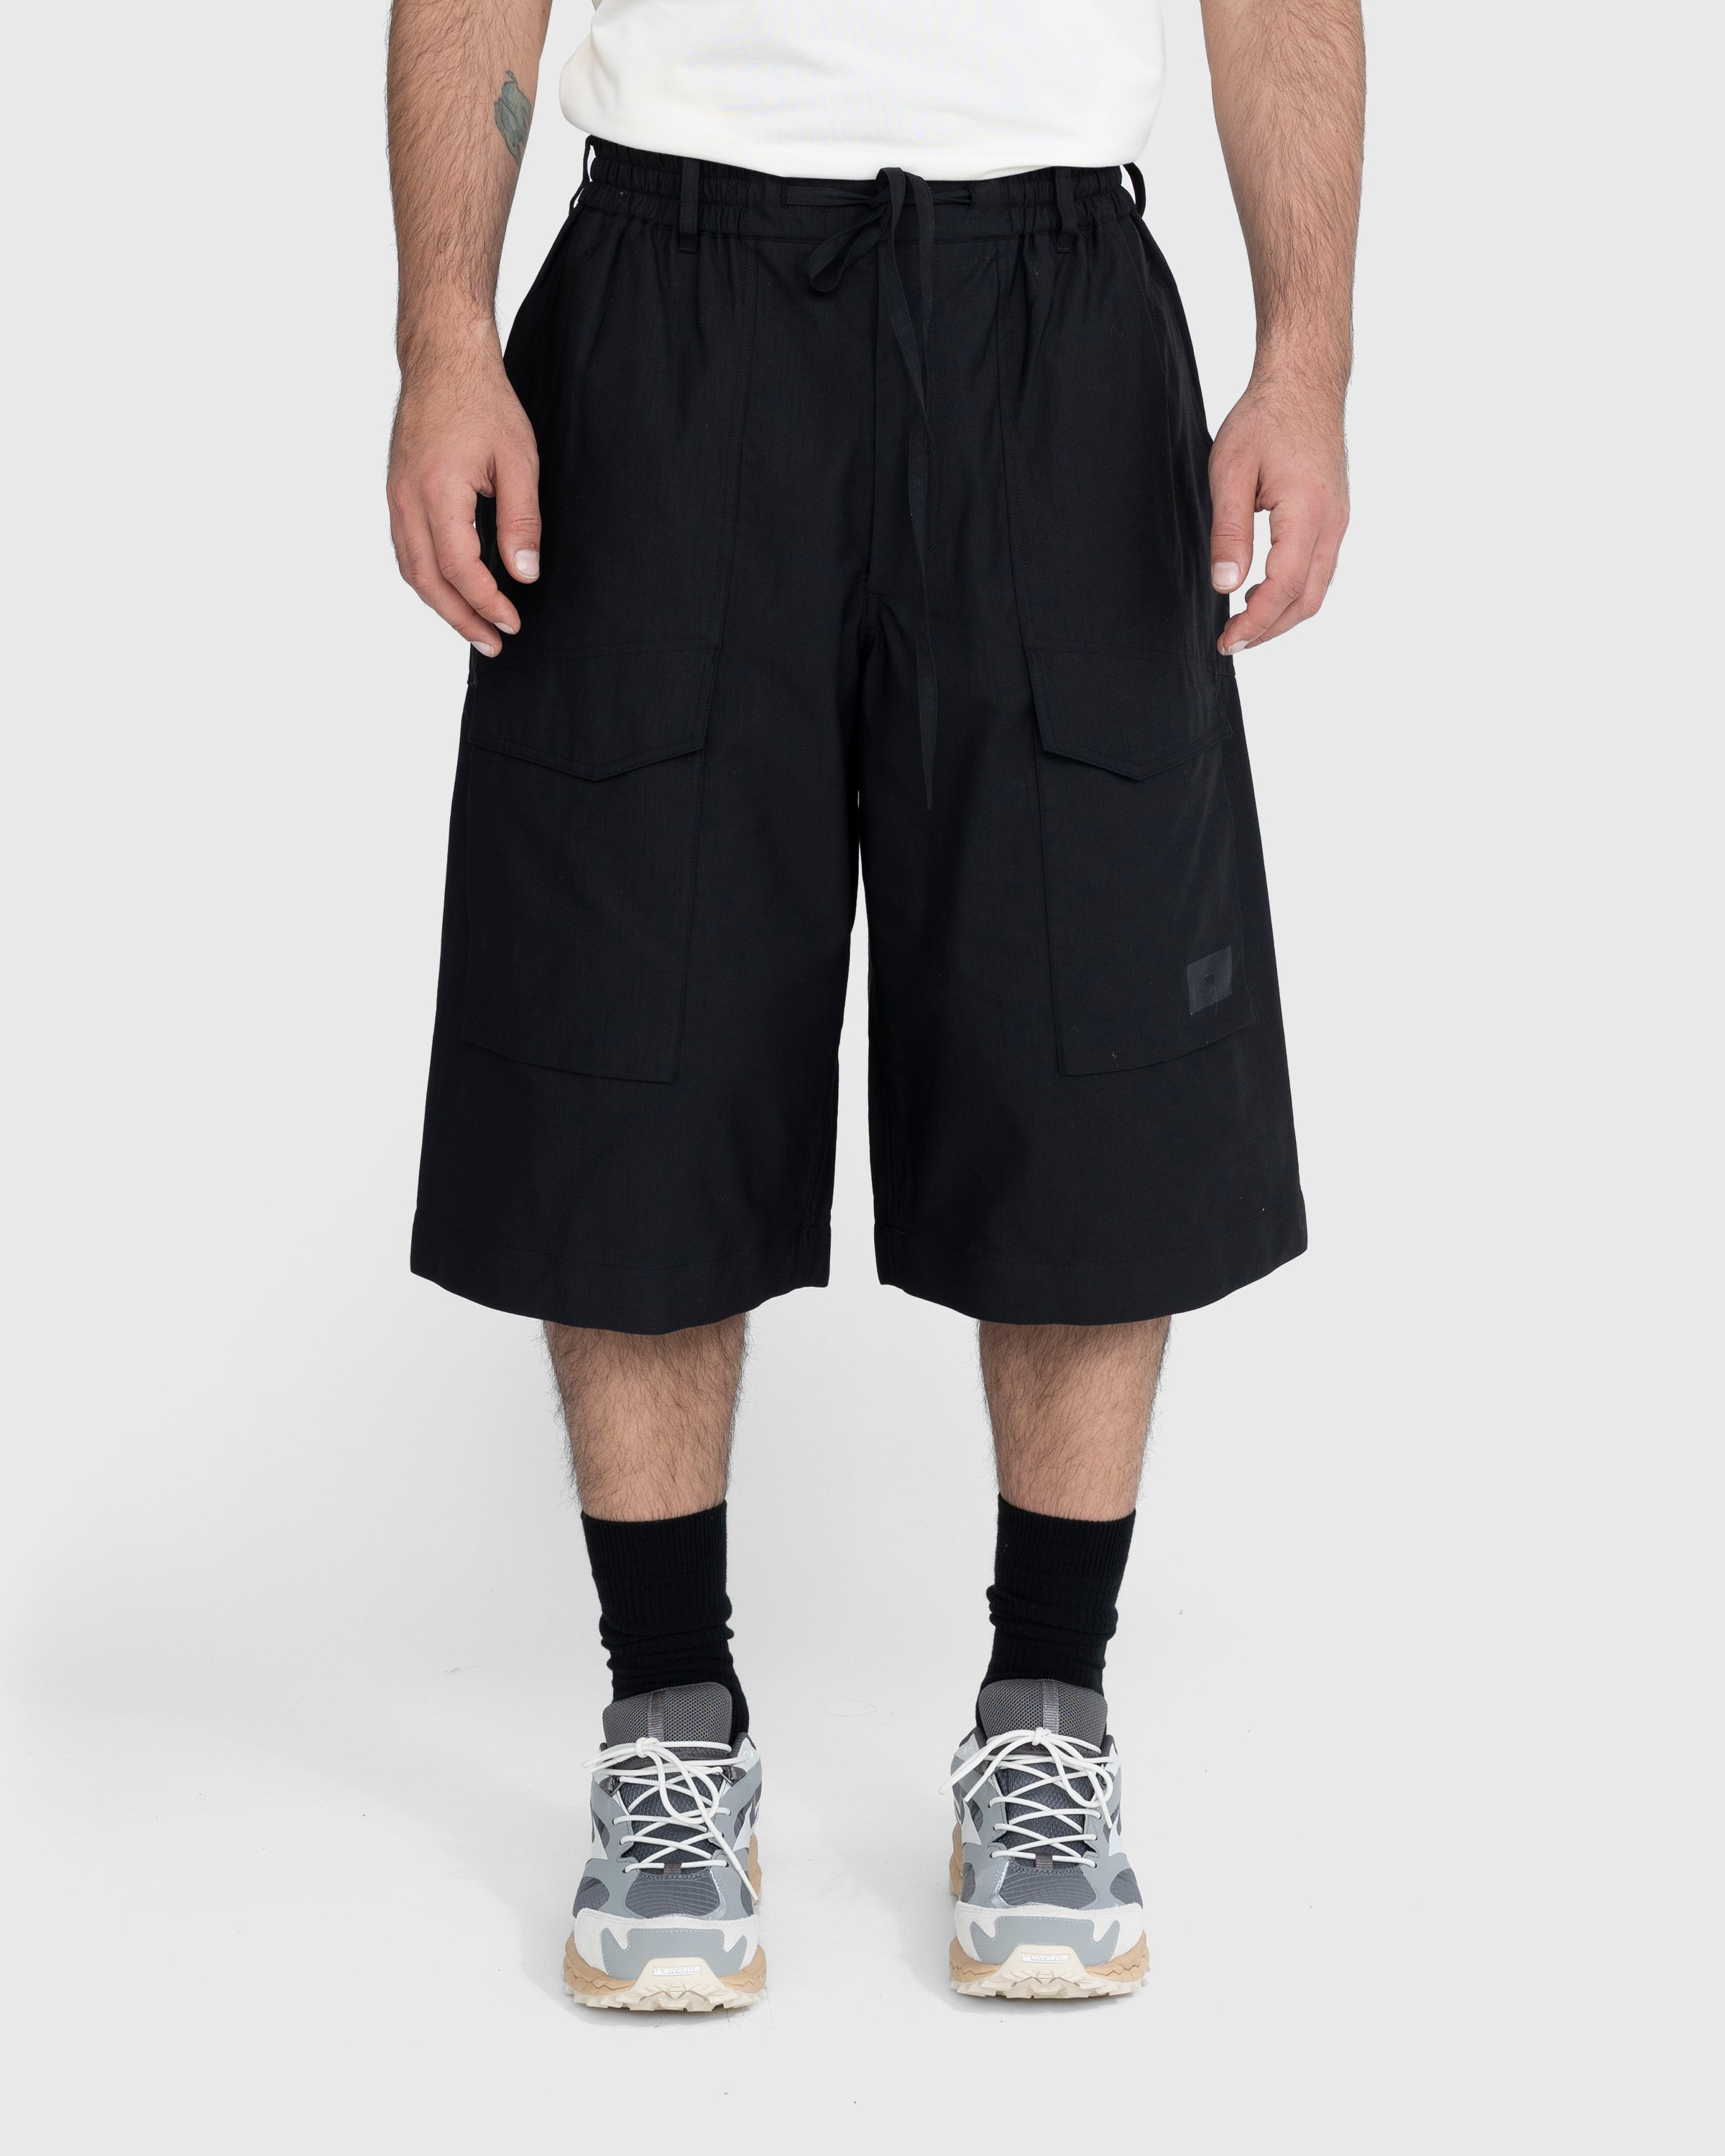 Y-3 - Workwear Shorts Black - Clothing - Black - Image 2